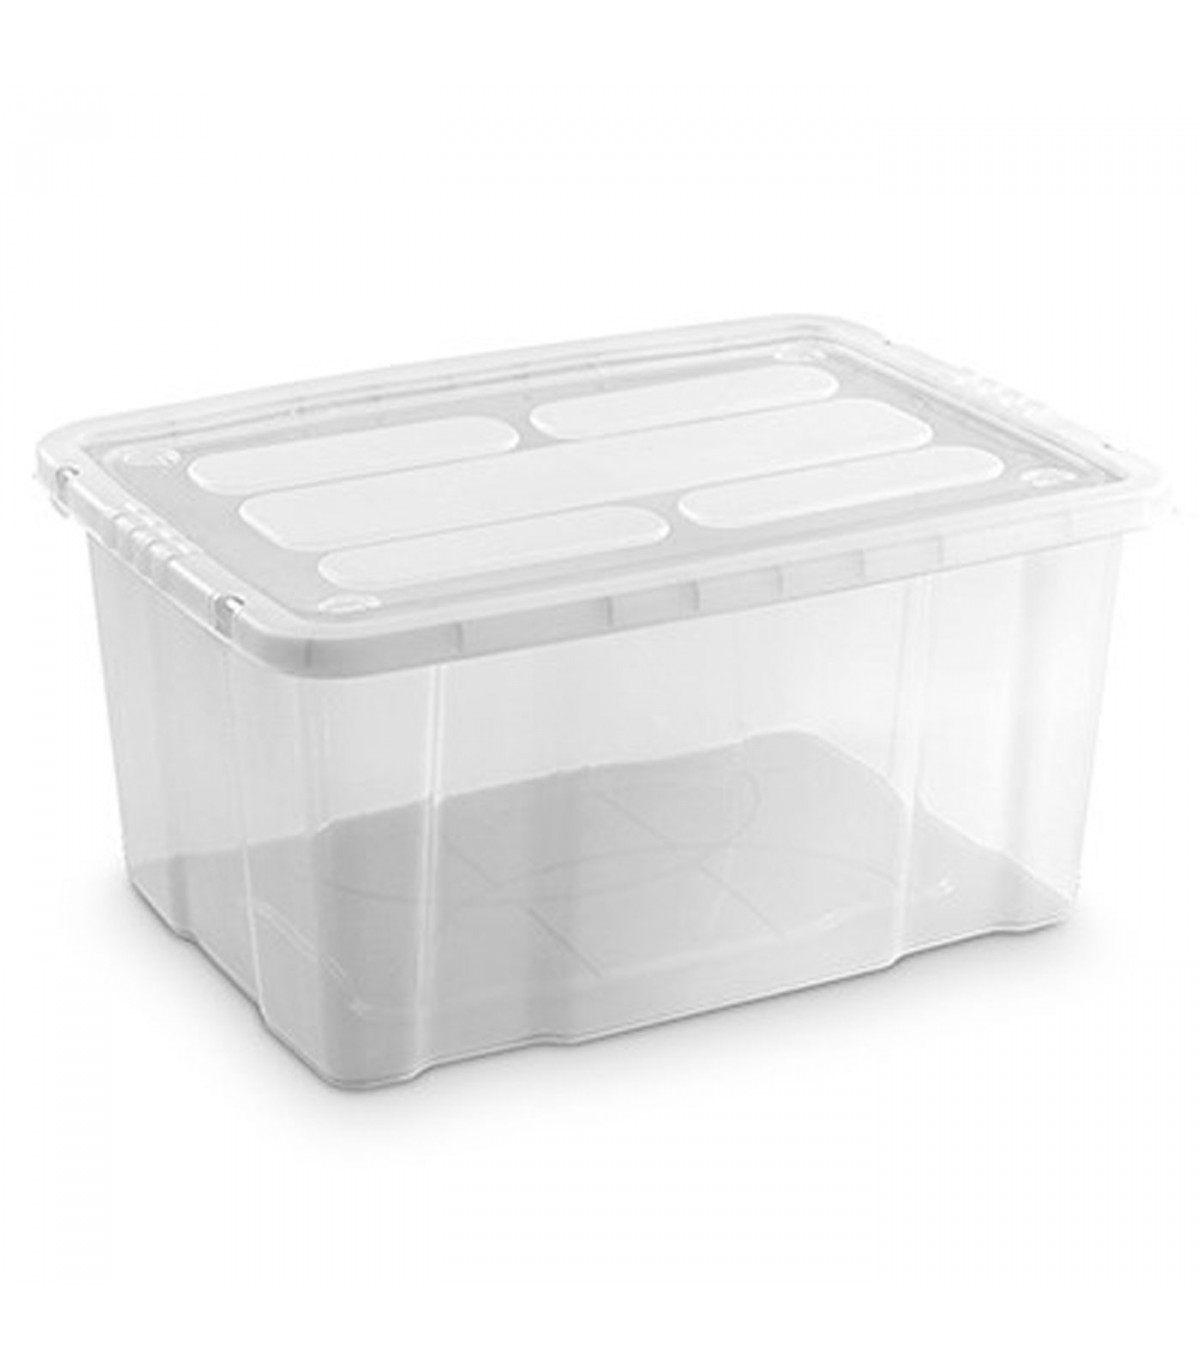 Caja almacenaje con tapa, plástico translúcido, cajón multiusos, ordenación, almacenamiento de objetos, hogar, 60 litros, 29,7 x 61,5 x 45 cm, Azul